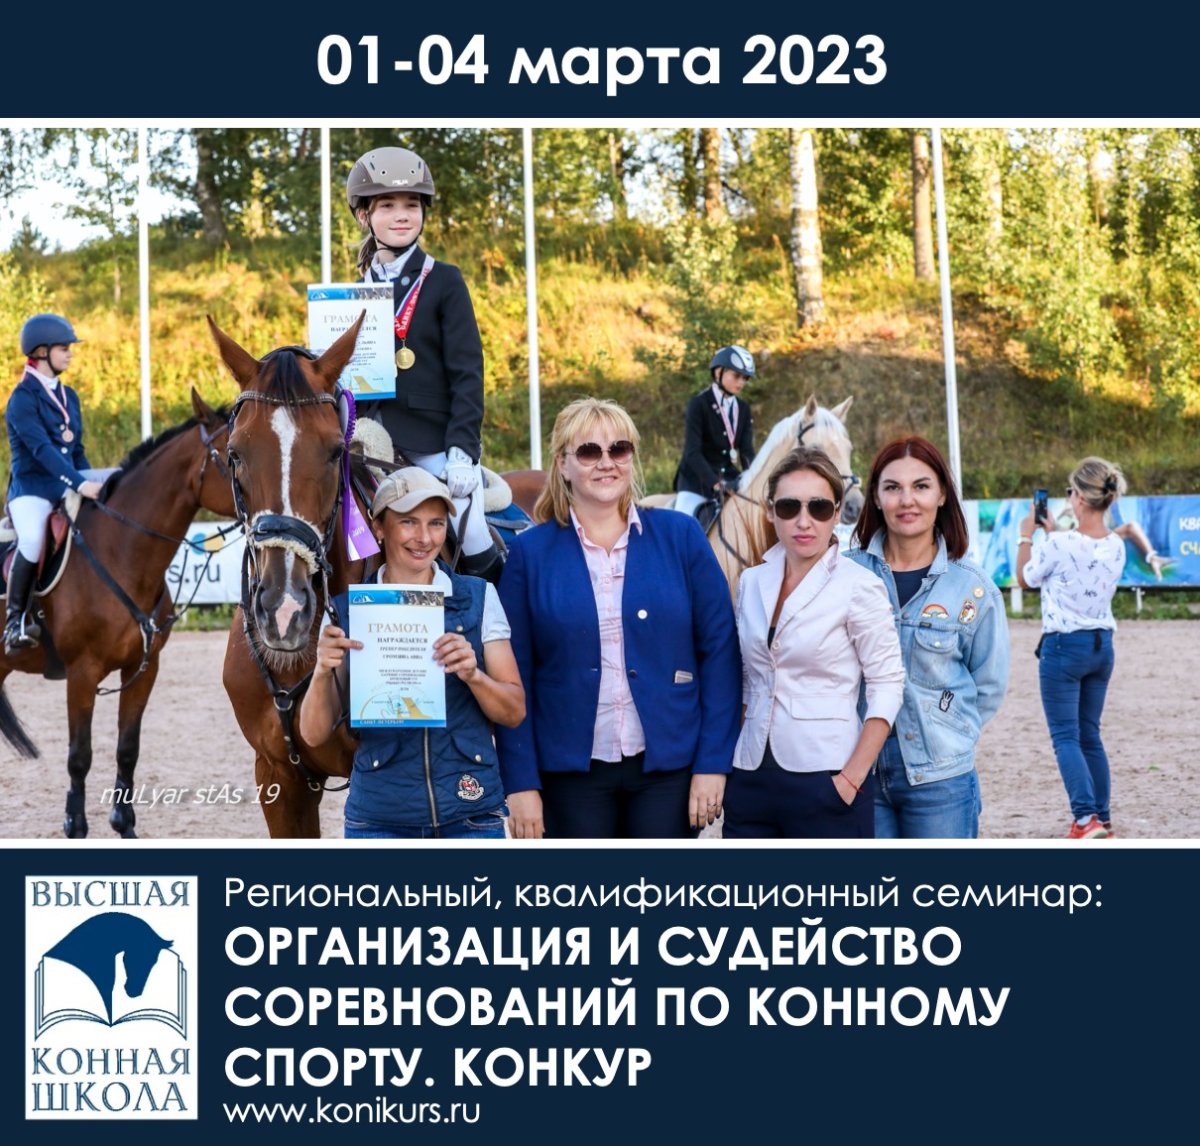 Приглашаем 01-04 марта на региональный, квалификационный семинар: "Организация и судейство соревнований по конному спорту. Конкур"!